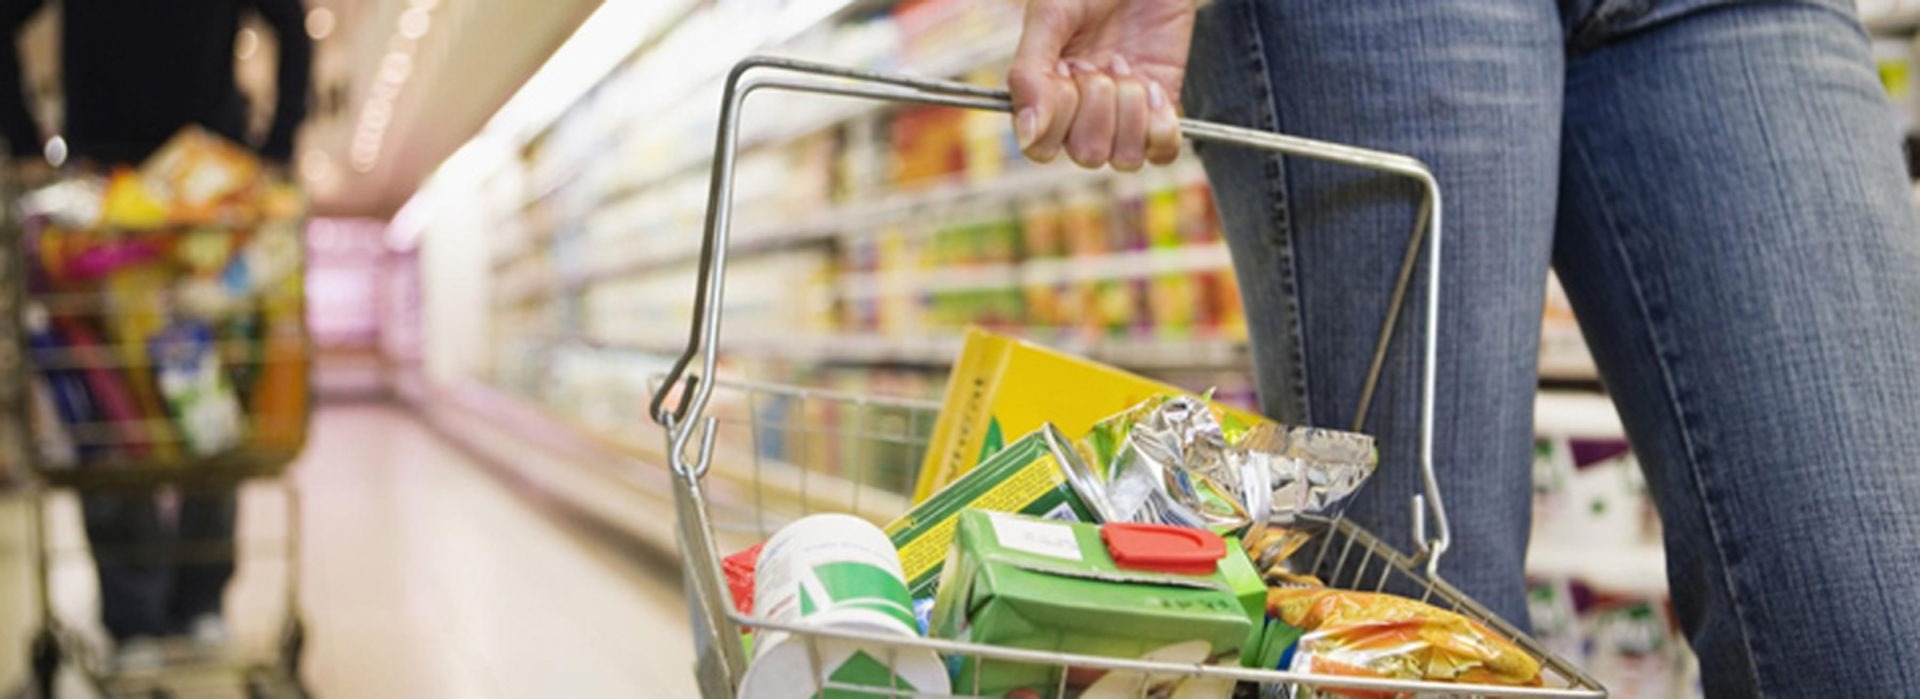 Supermercado: Compra inteligente y sin tentaciones